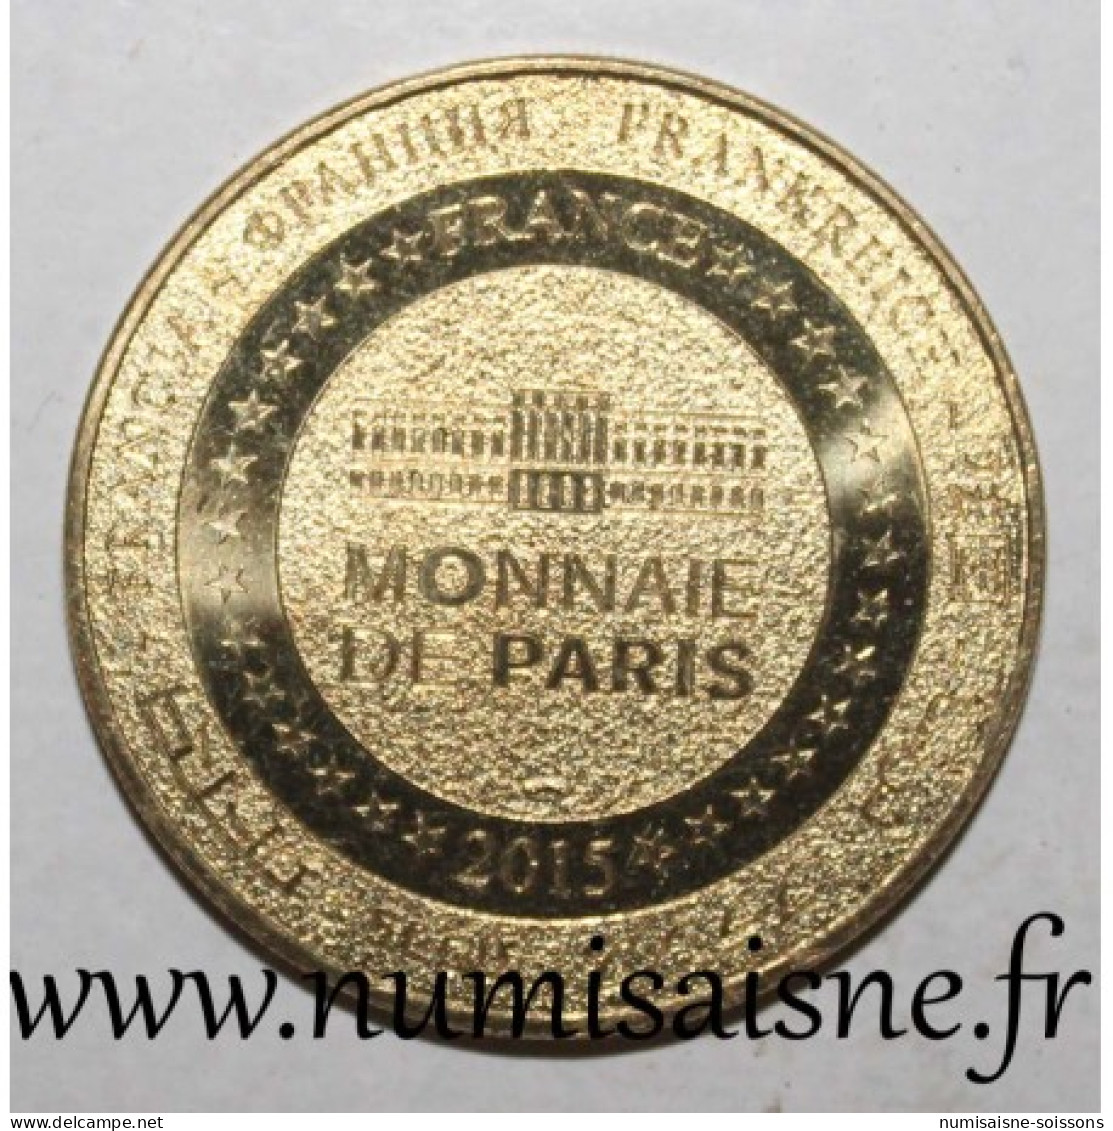 25 - ARC ET SENANS - SALINE ROYALE - Monnaie De Paris - 2015 - 2015